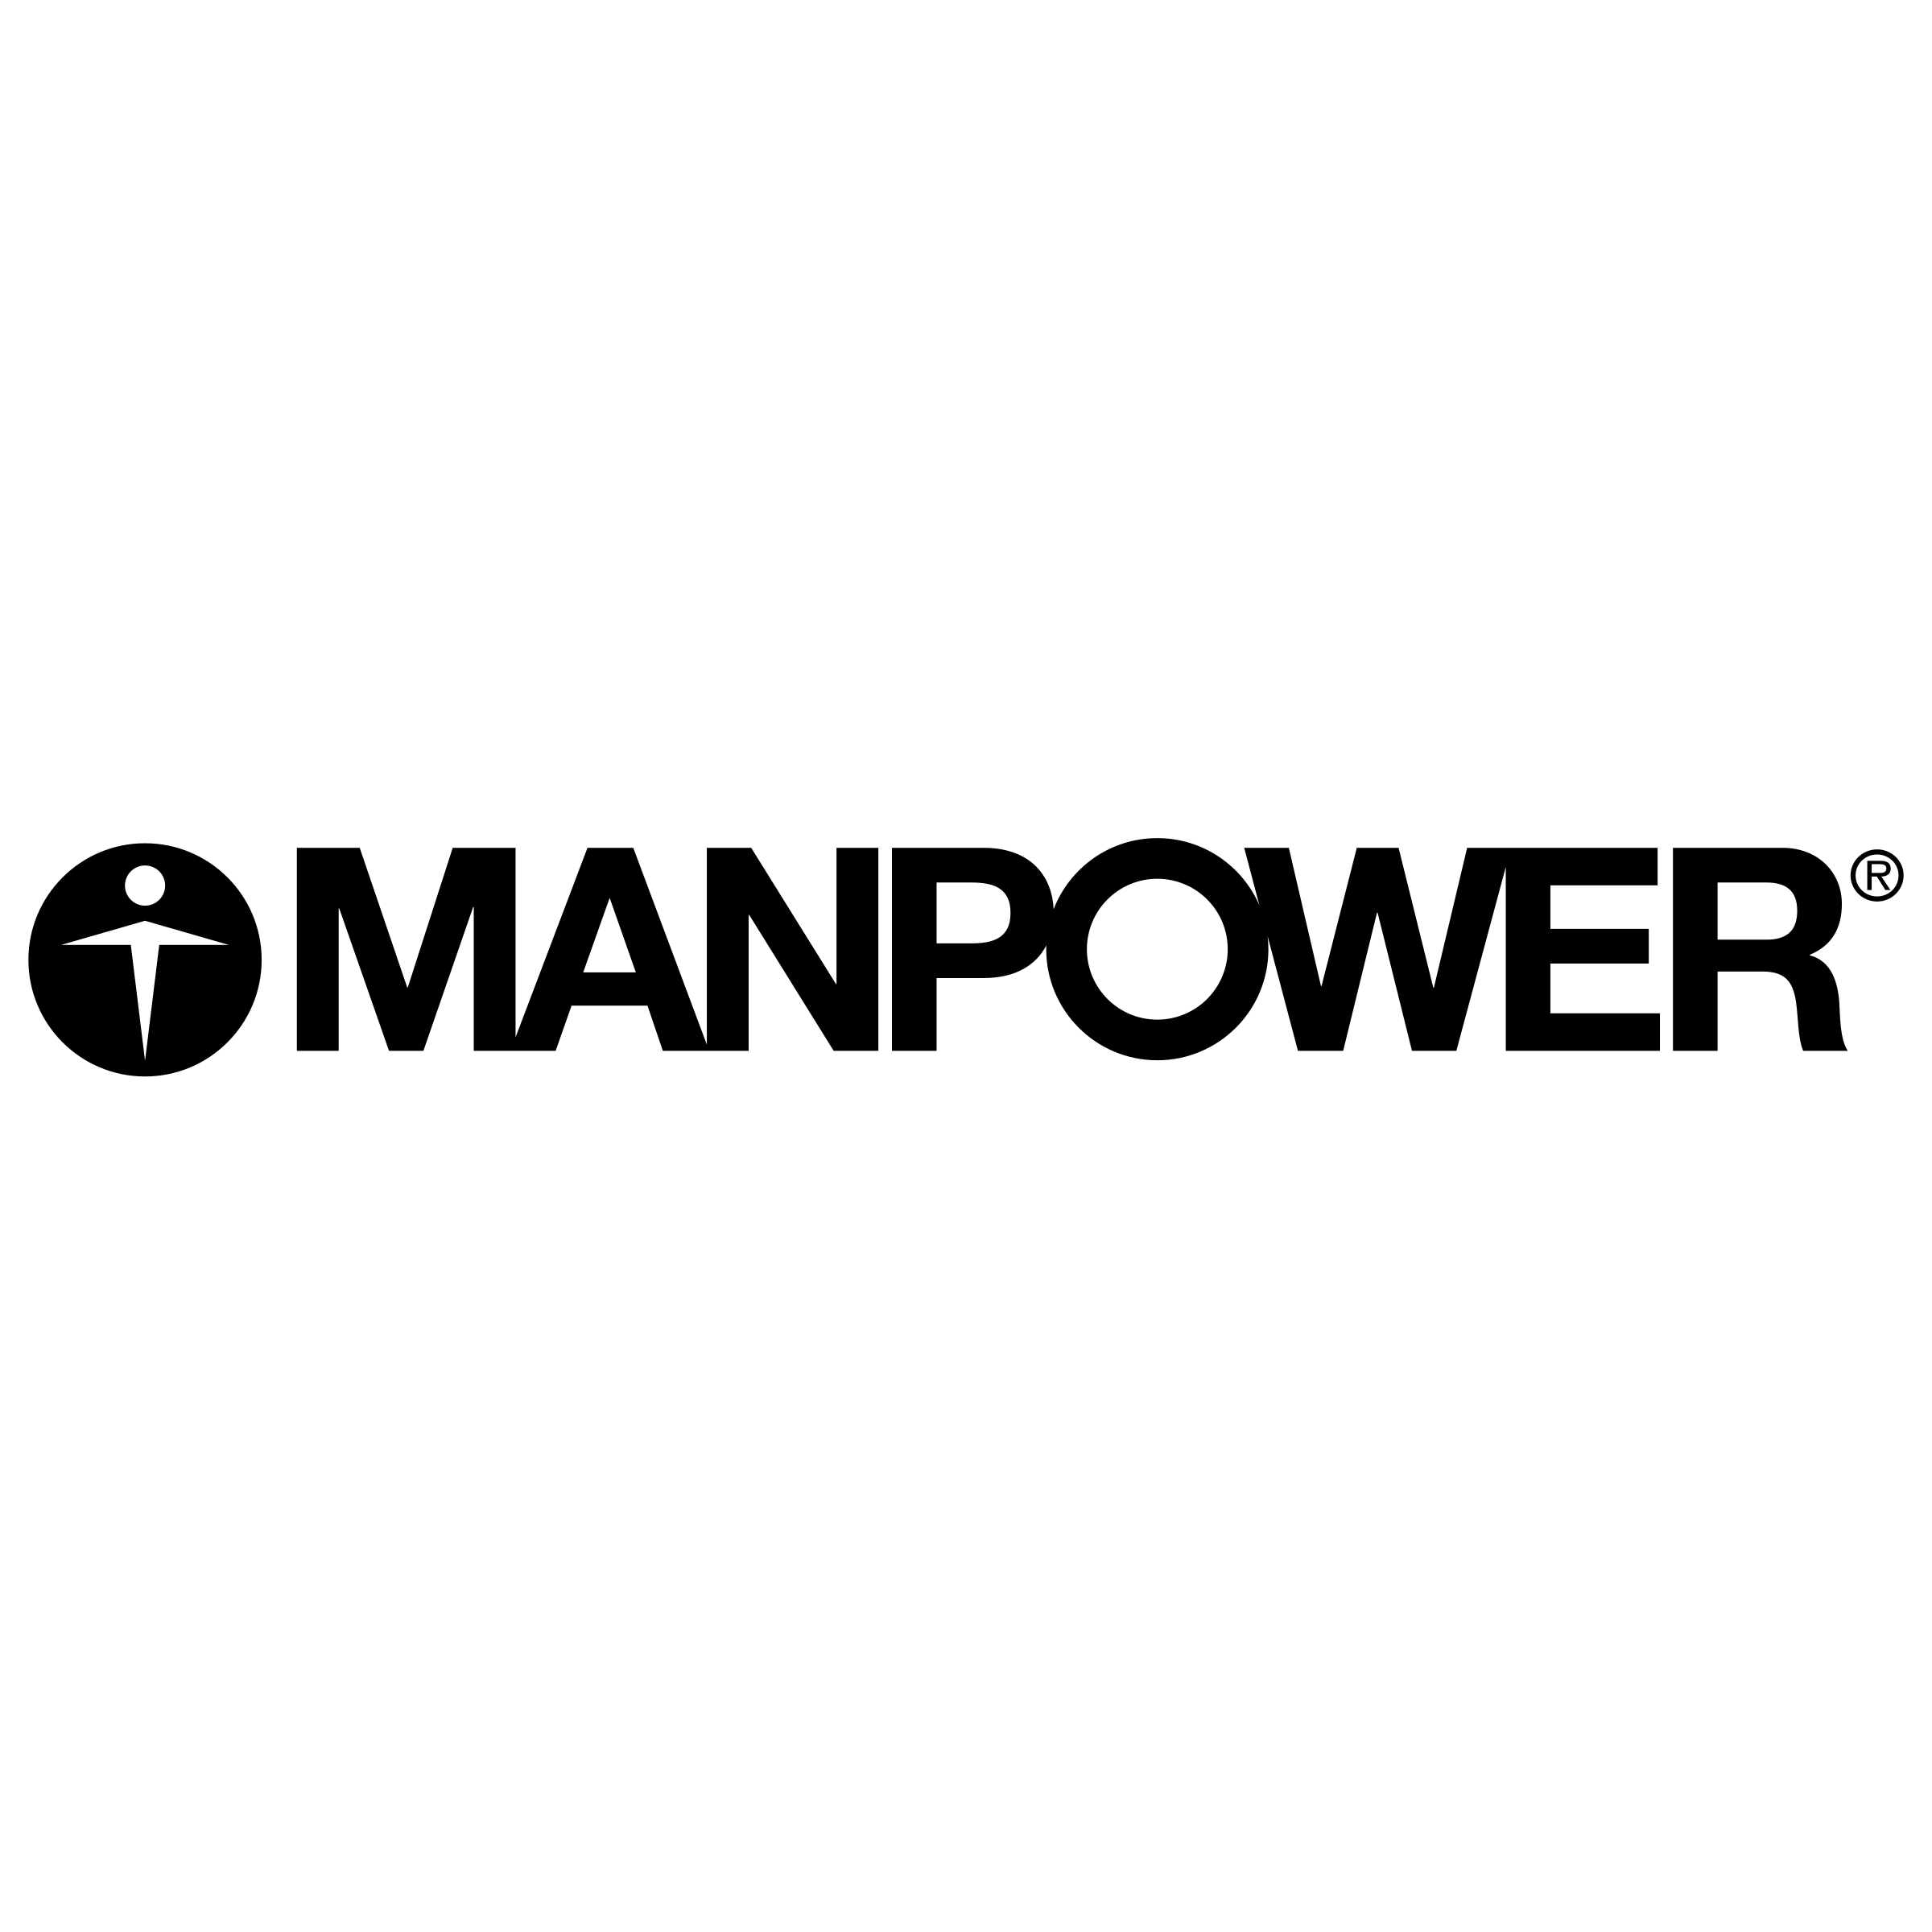 Manpower Logo - Manpower Logo PNG Transparent & SVG Vector